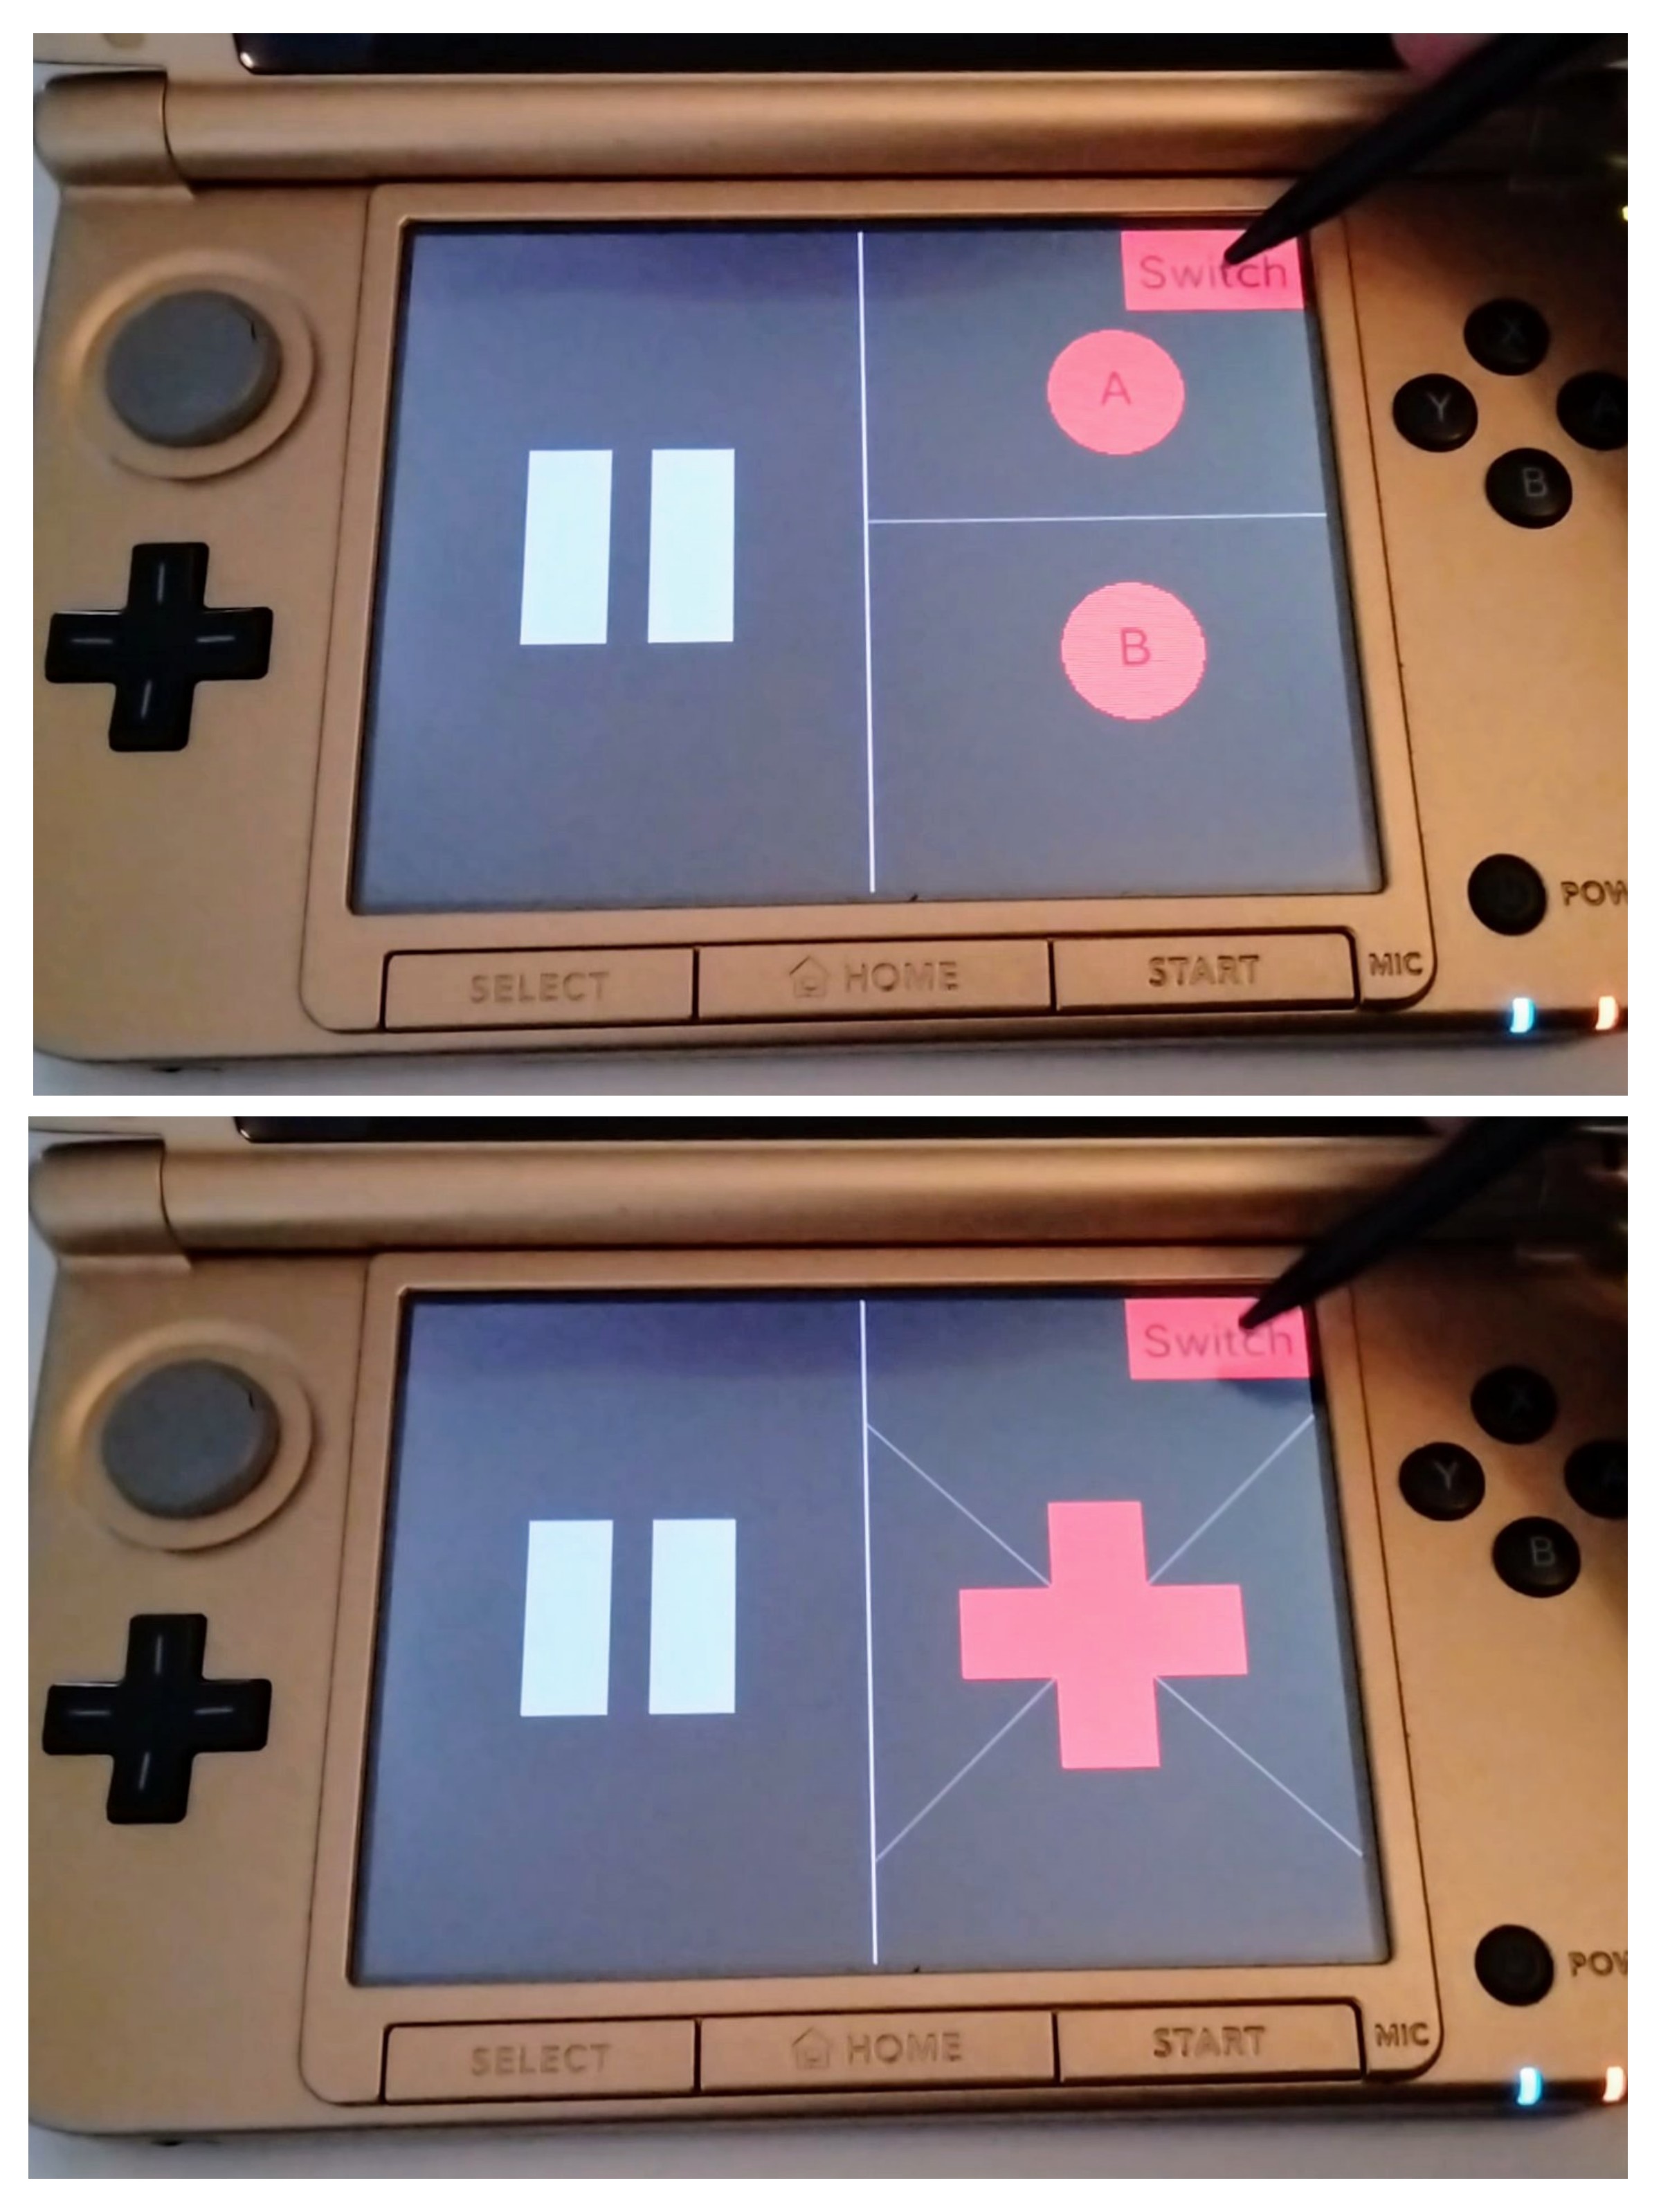 Los botones extra del mando de virtual boy se cambian en la pantalla inferior de la consola